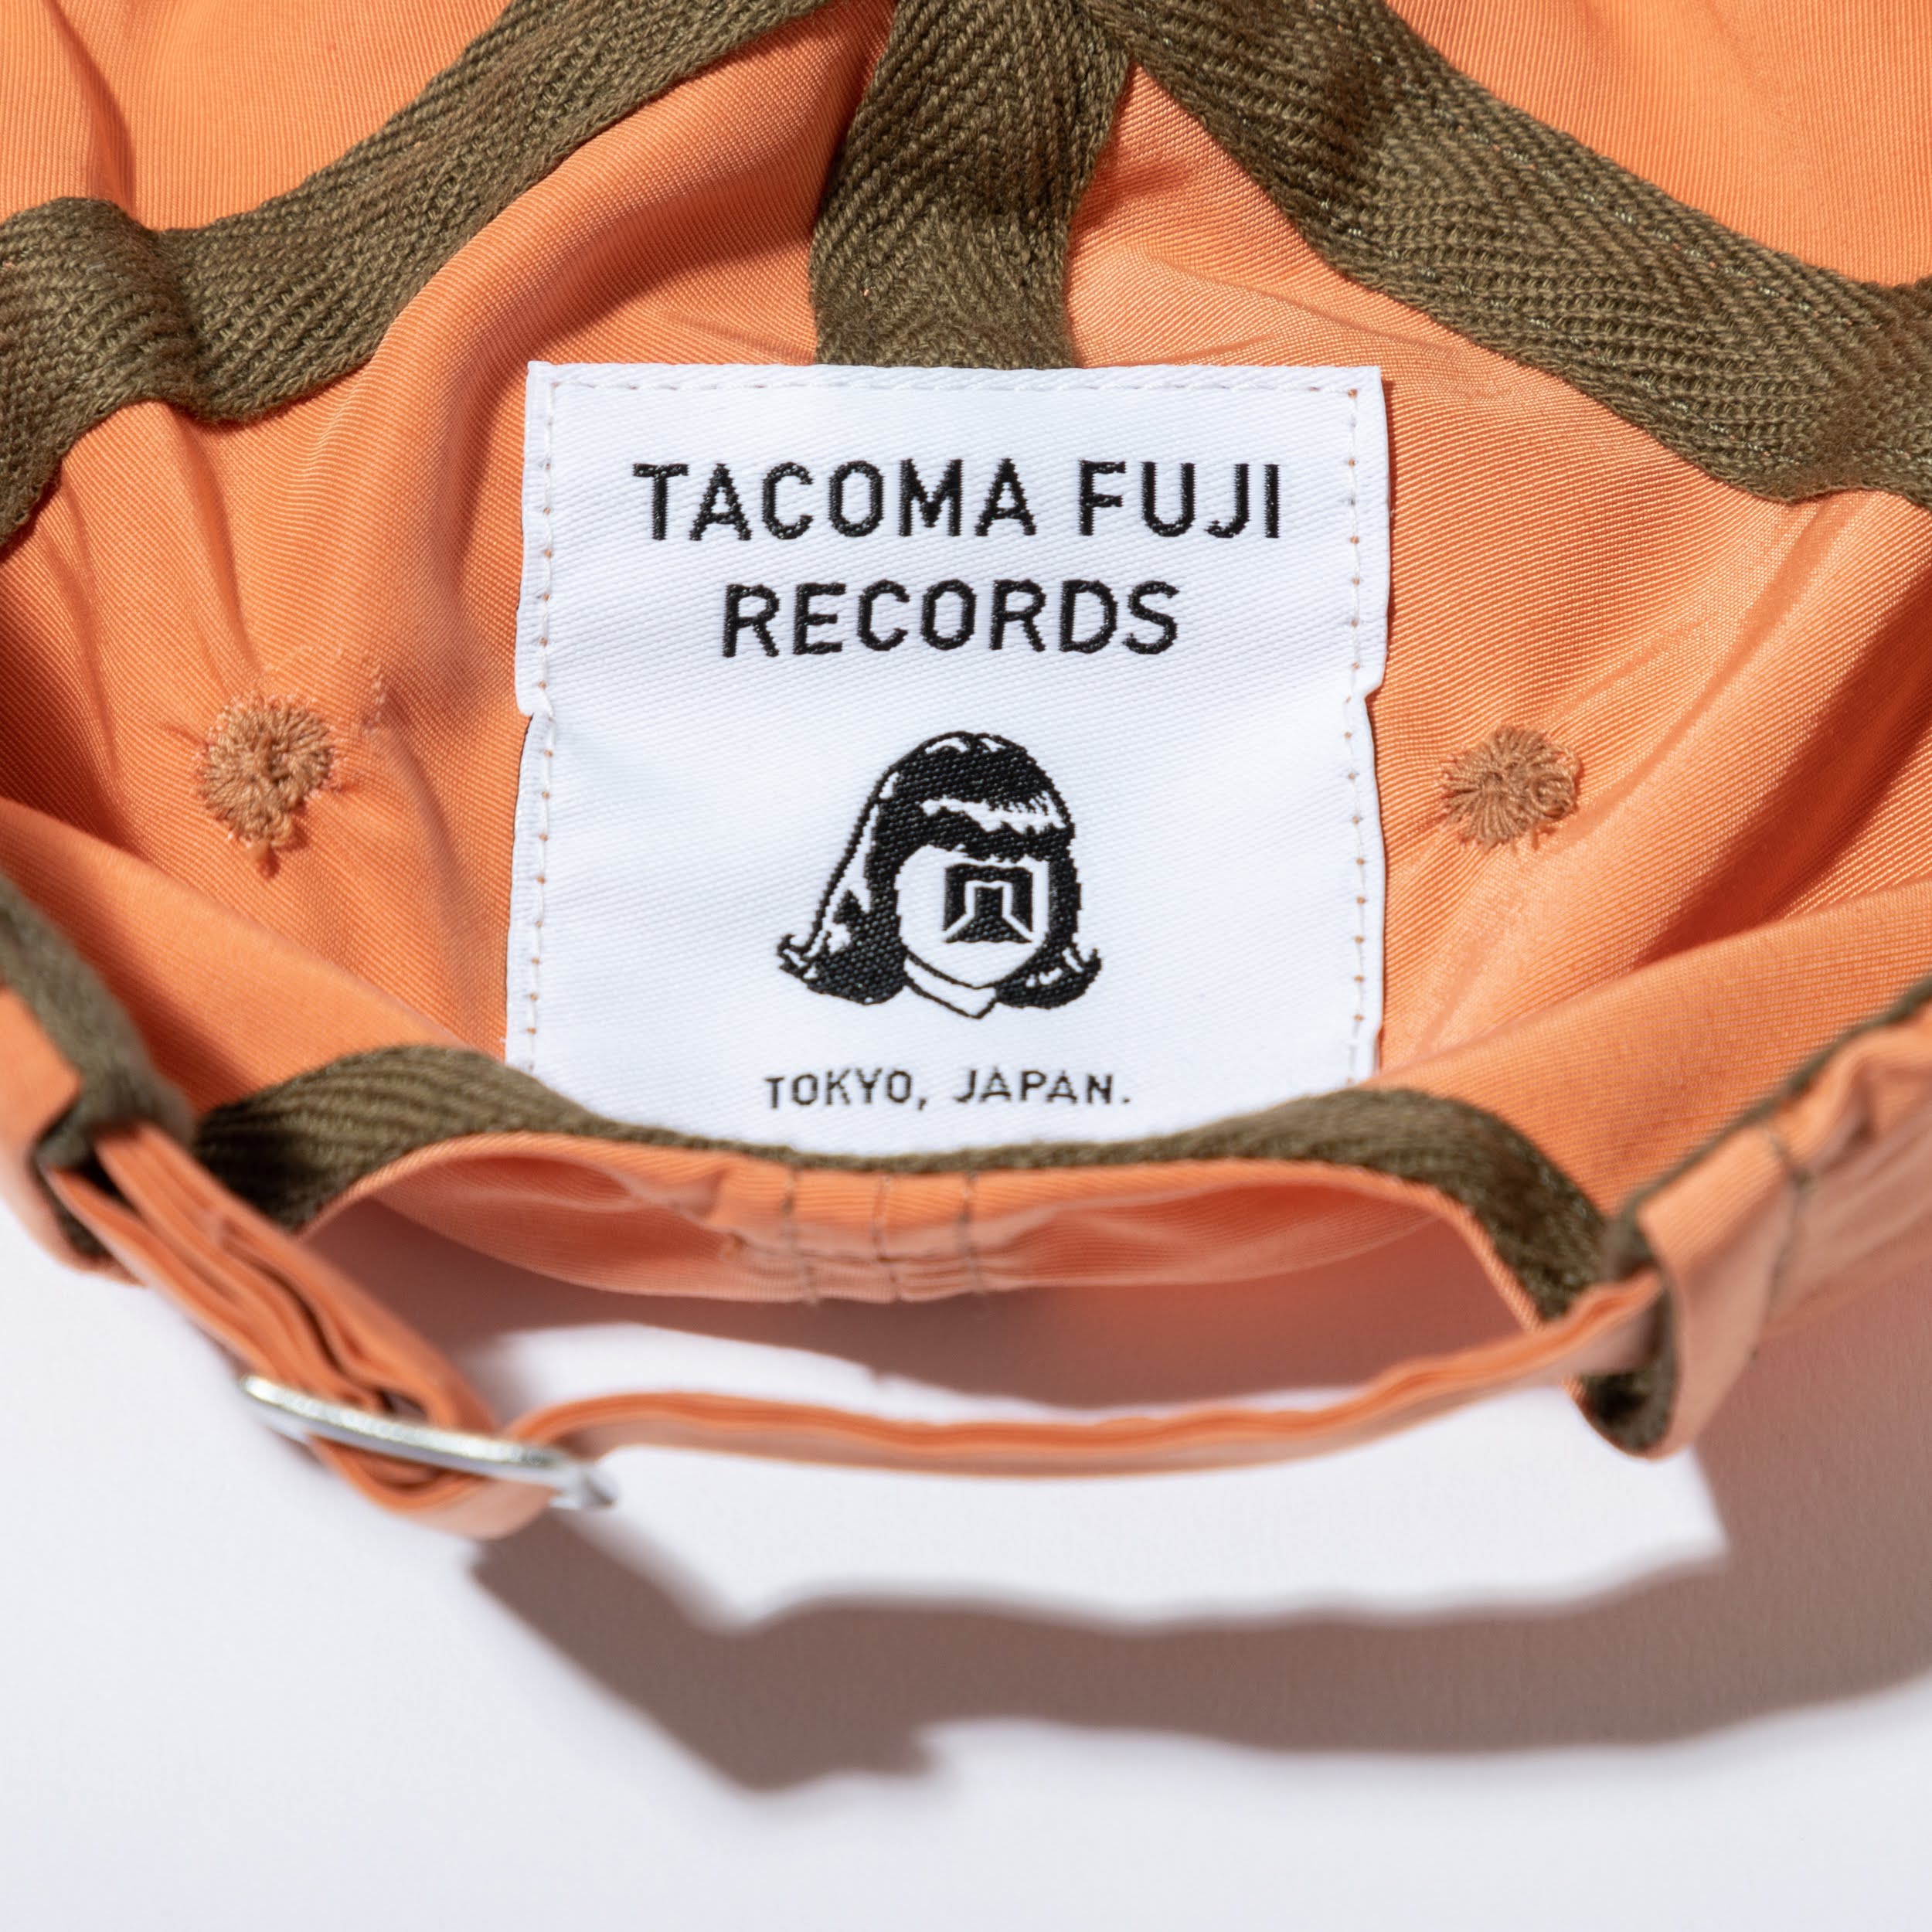 CIRCLES ORIGINAL TACOMA FUJI RECORDS meets Circles Cap